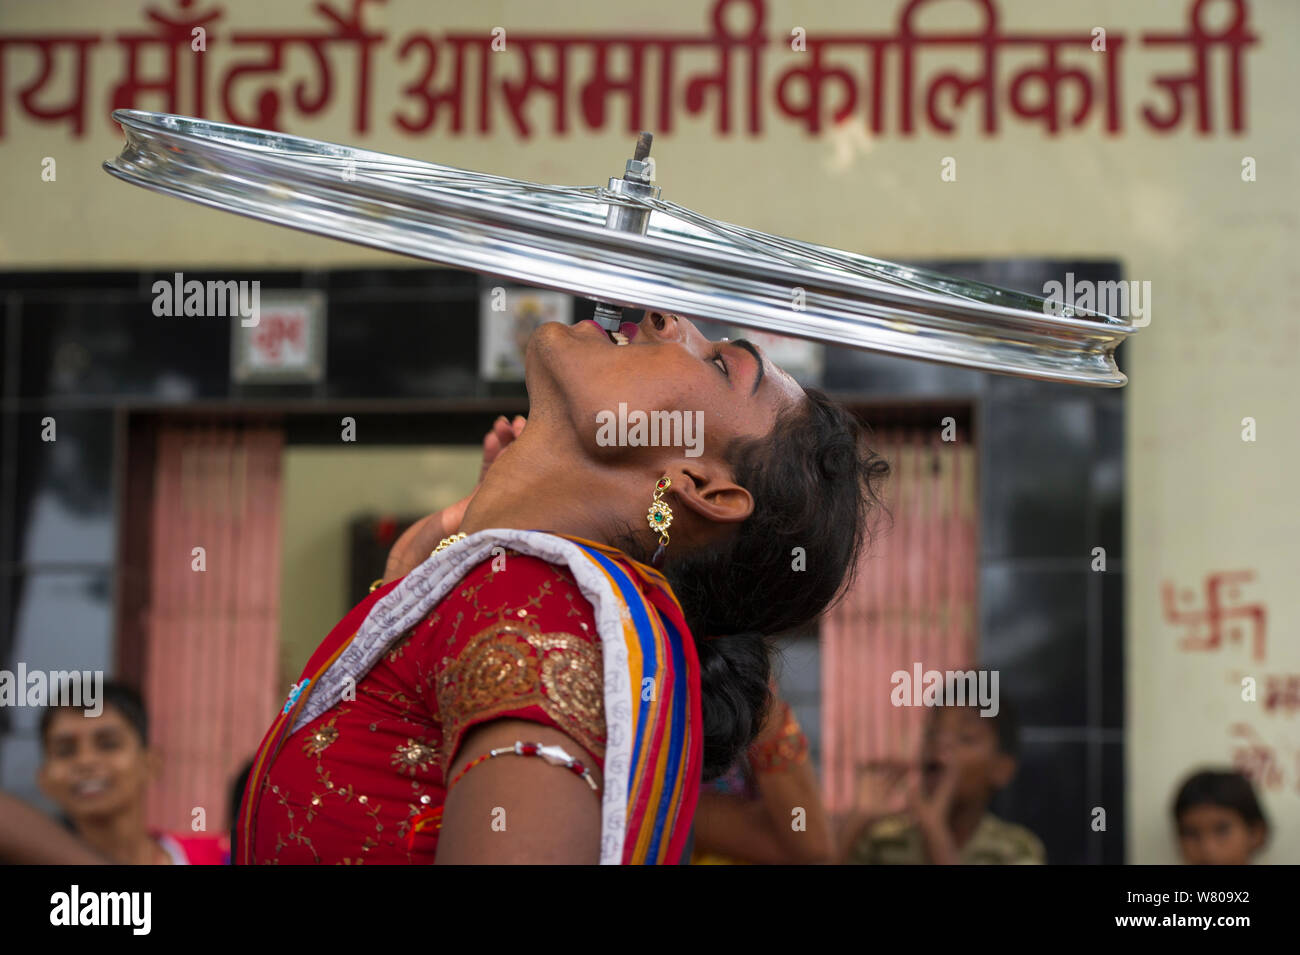 Artiste Hijra, l'équilibrage roue de bicyclette sur les dents. Les Hijra sont transgenres, légalement reconnue comme un troisième genre en Inde. L'Uttar Pradesh, Inde, octobre 2014. Banque D'Images